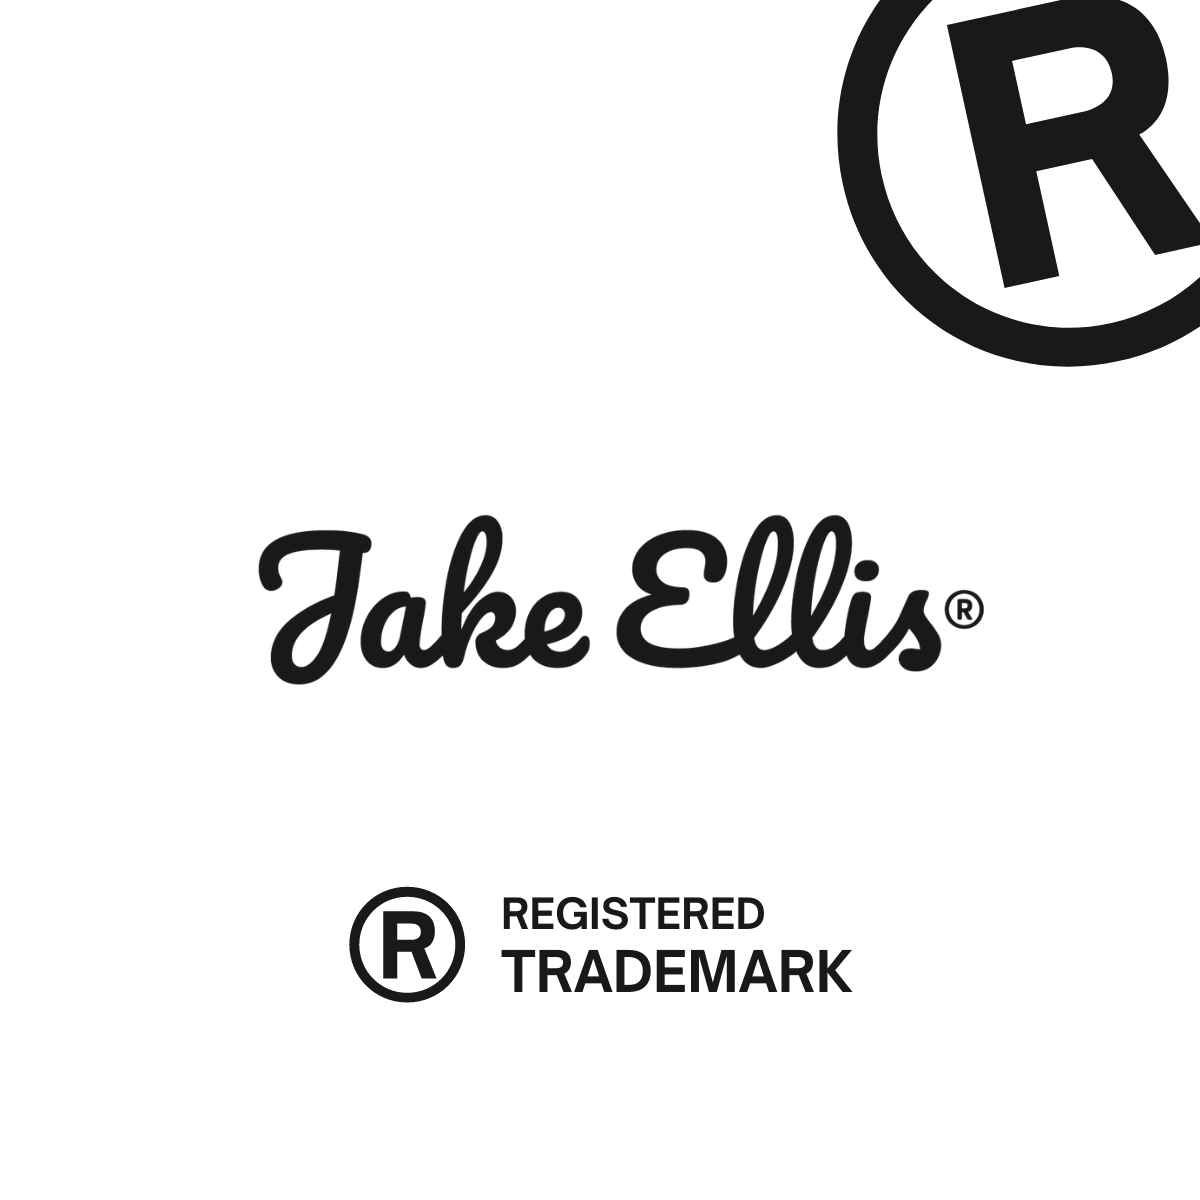 We're now Trademarked! - Jake Ellis®